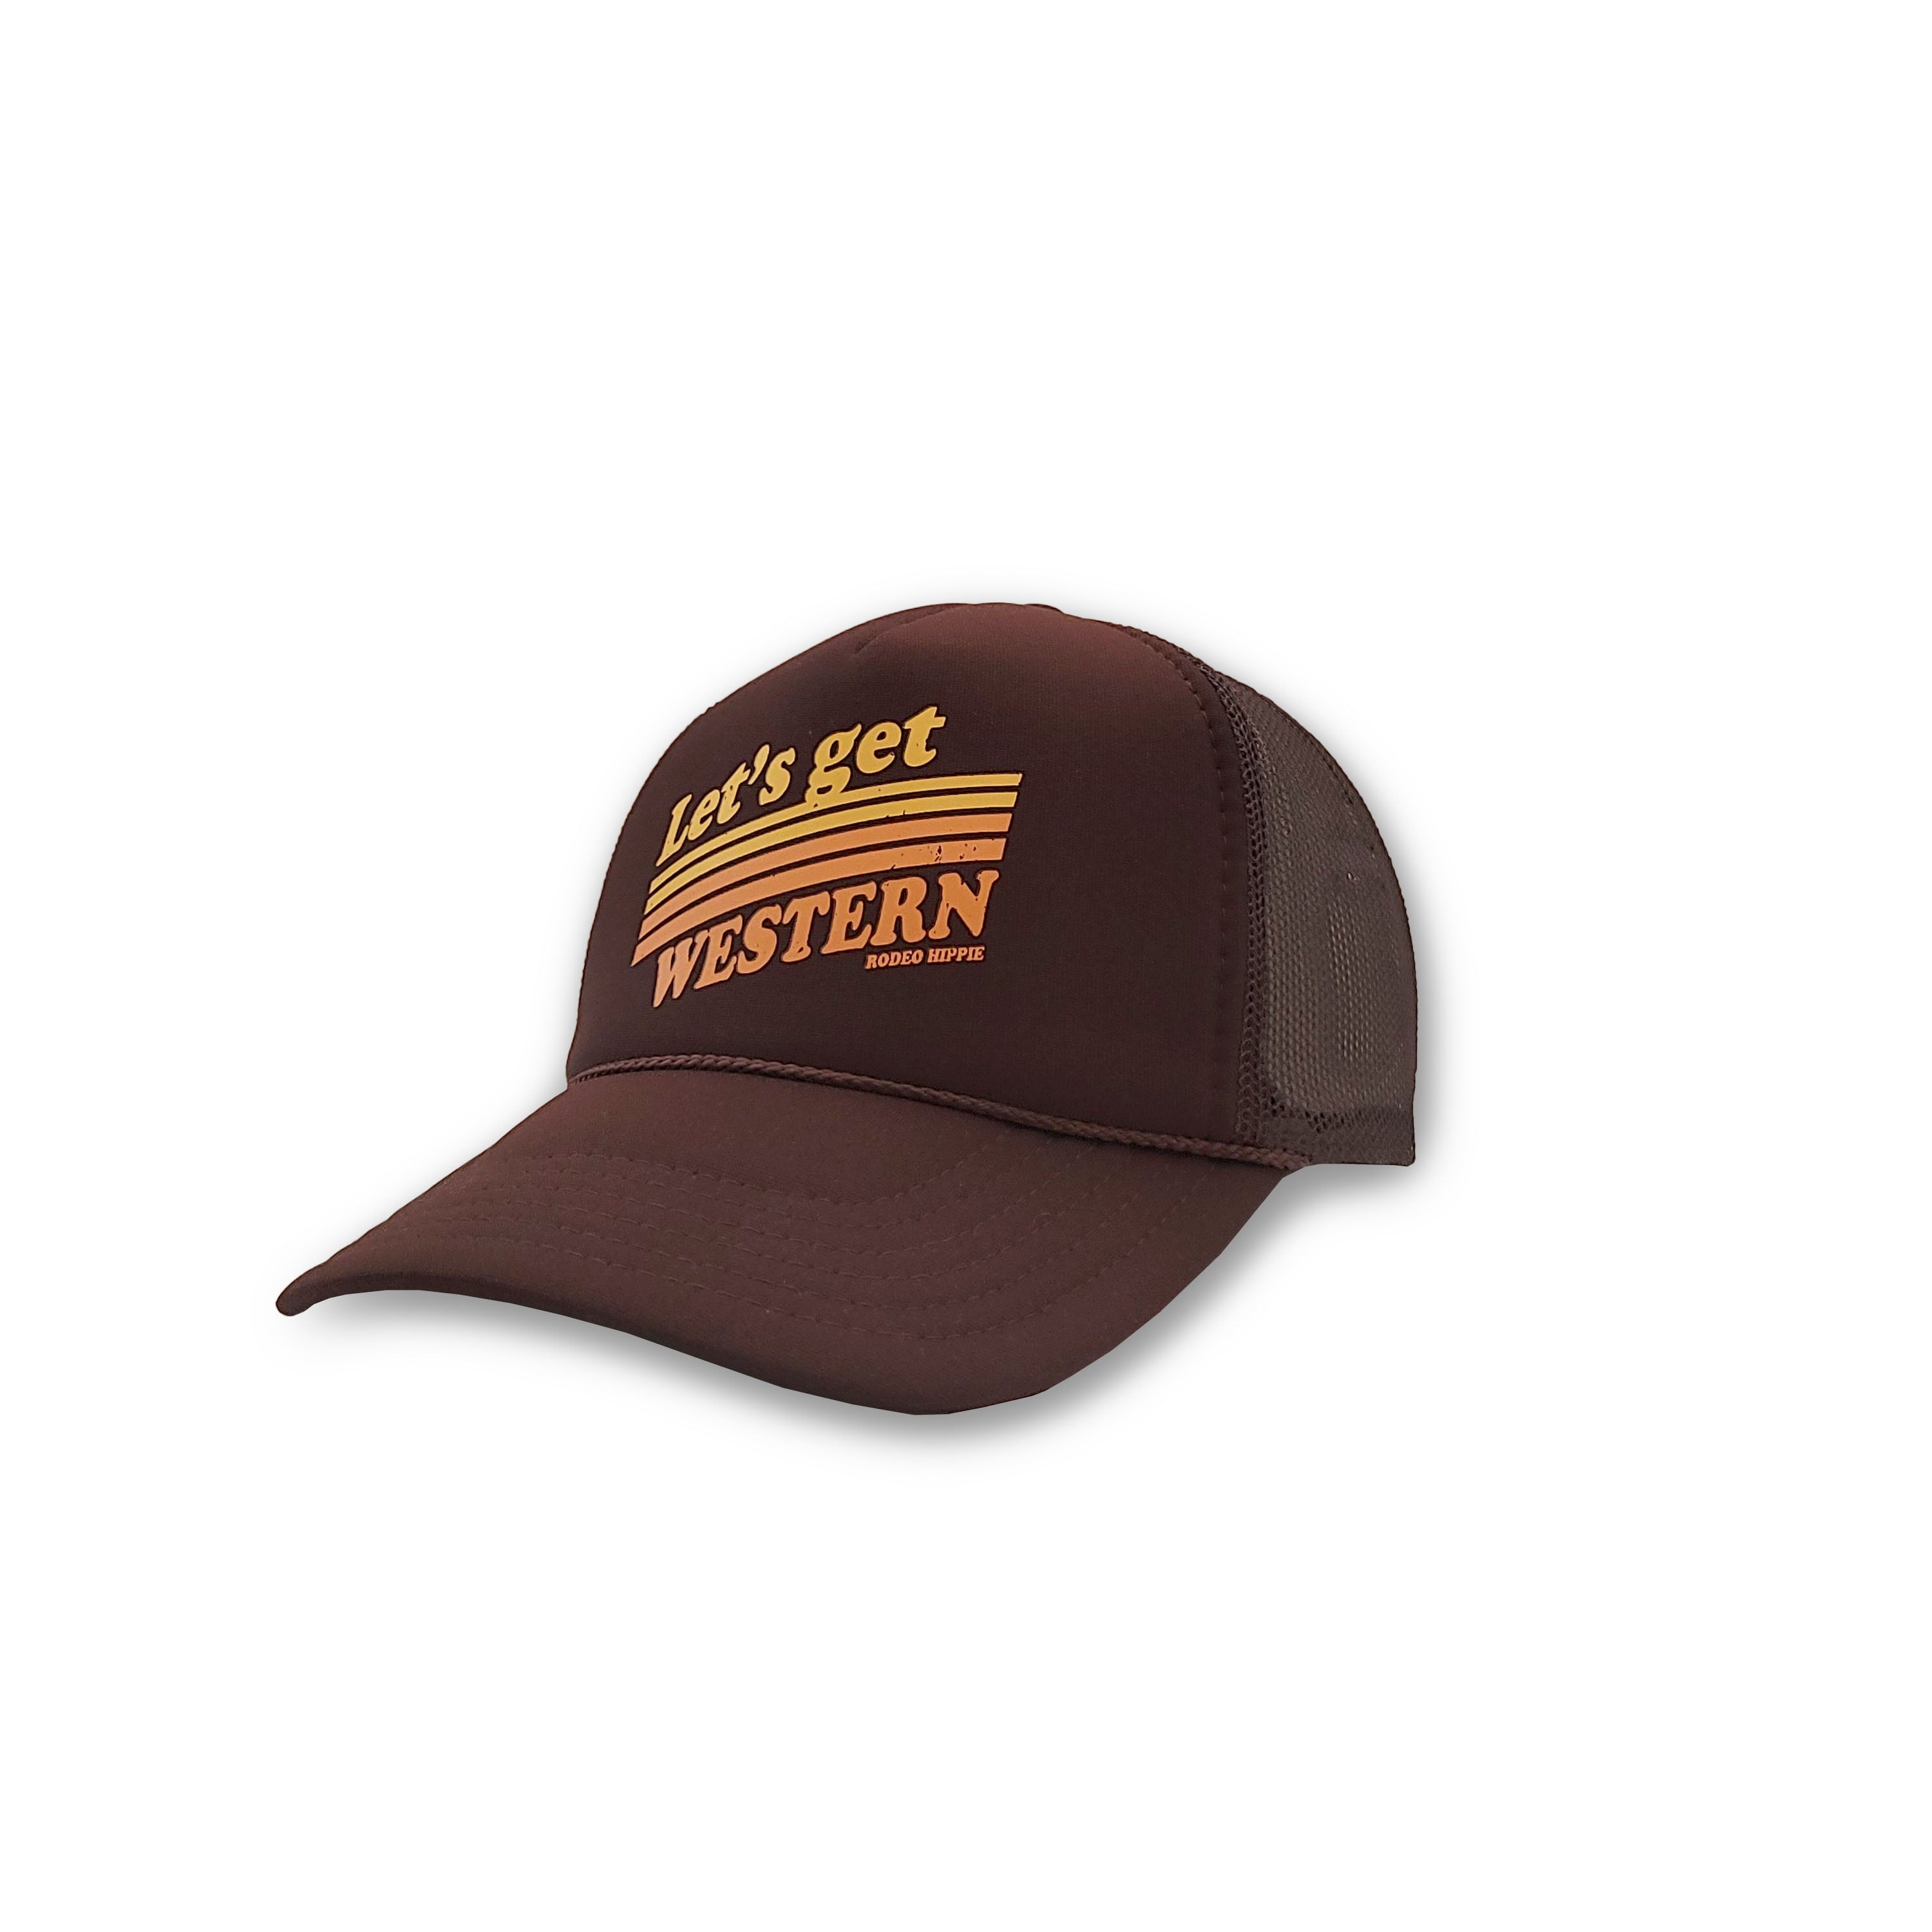 Get Western foam trucker hat by Rodeo Hippie